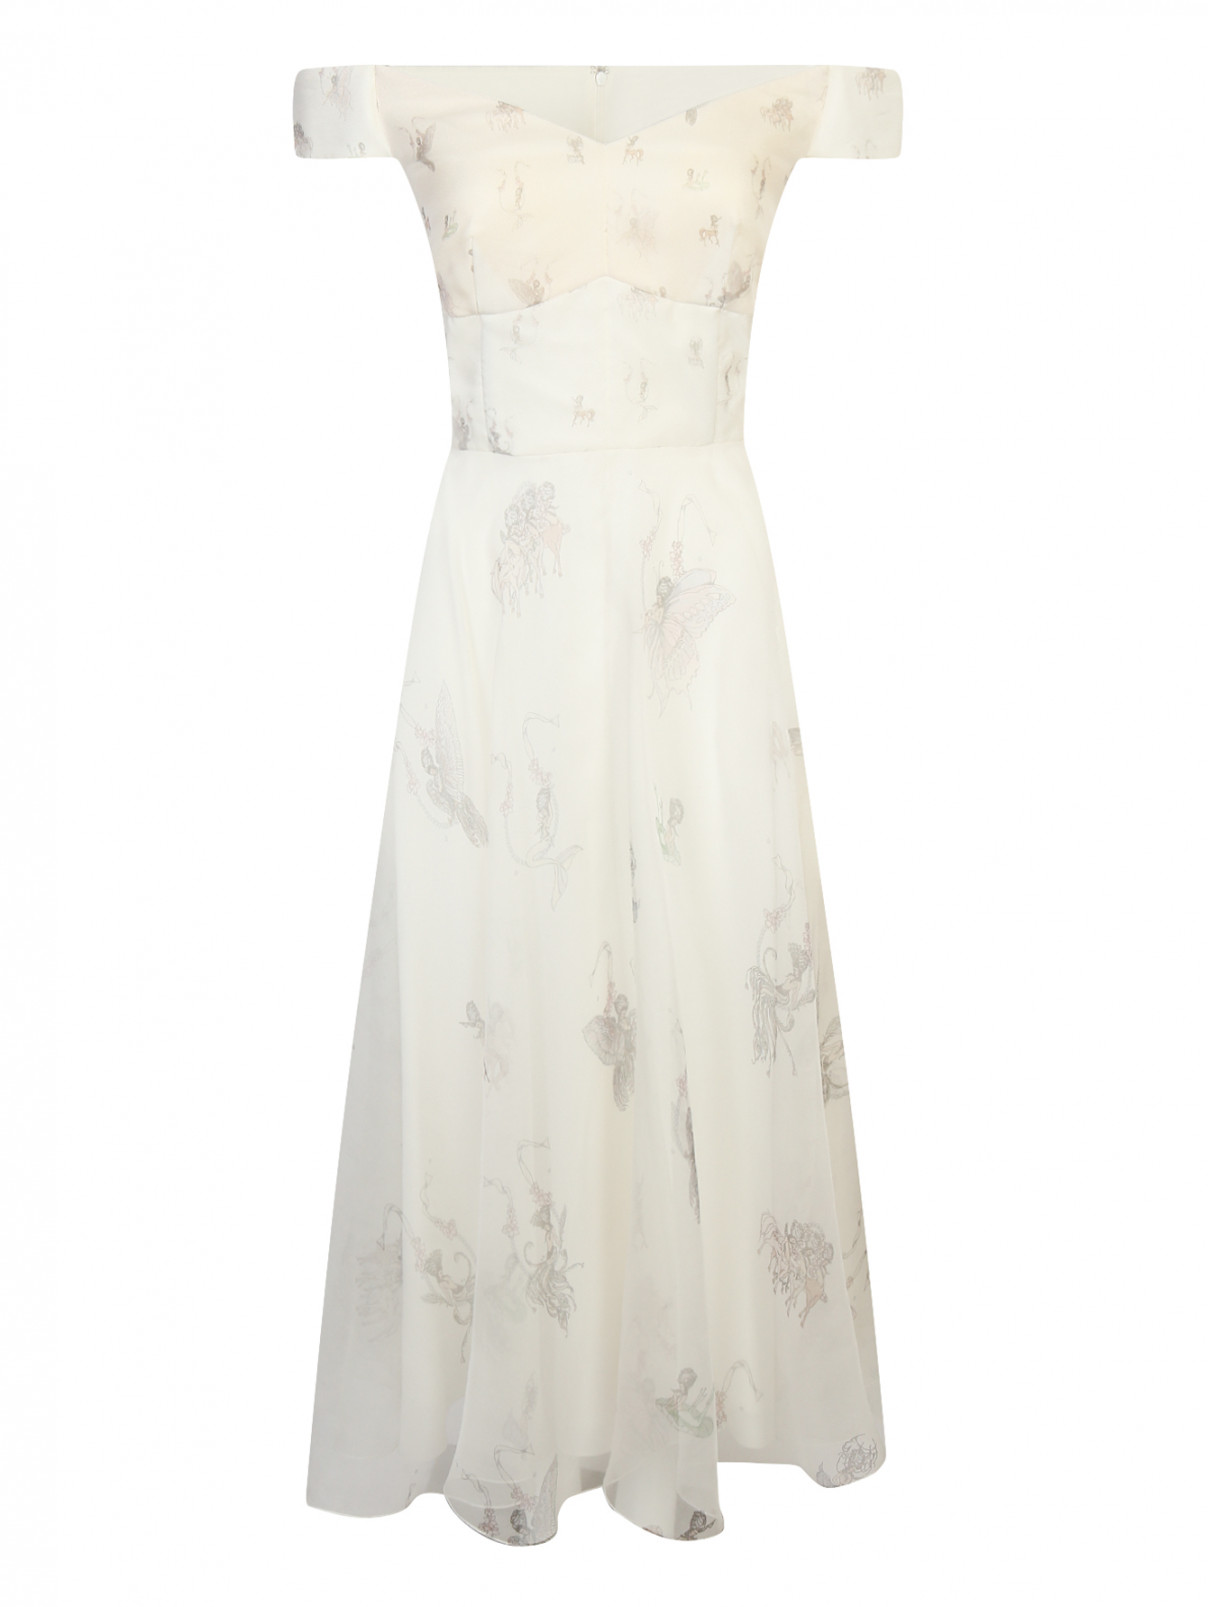 Платье-миди из шелка с узором Руж  –  Общий вид  – Цвет:  Белый